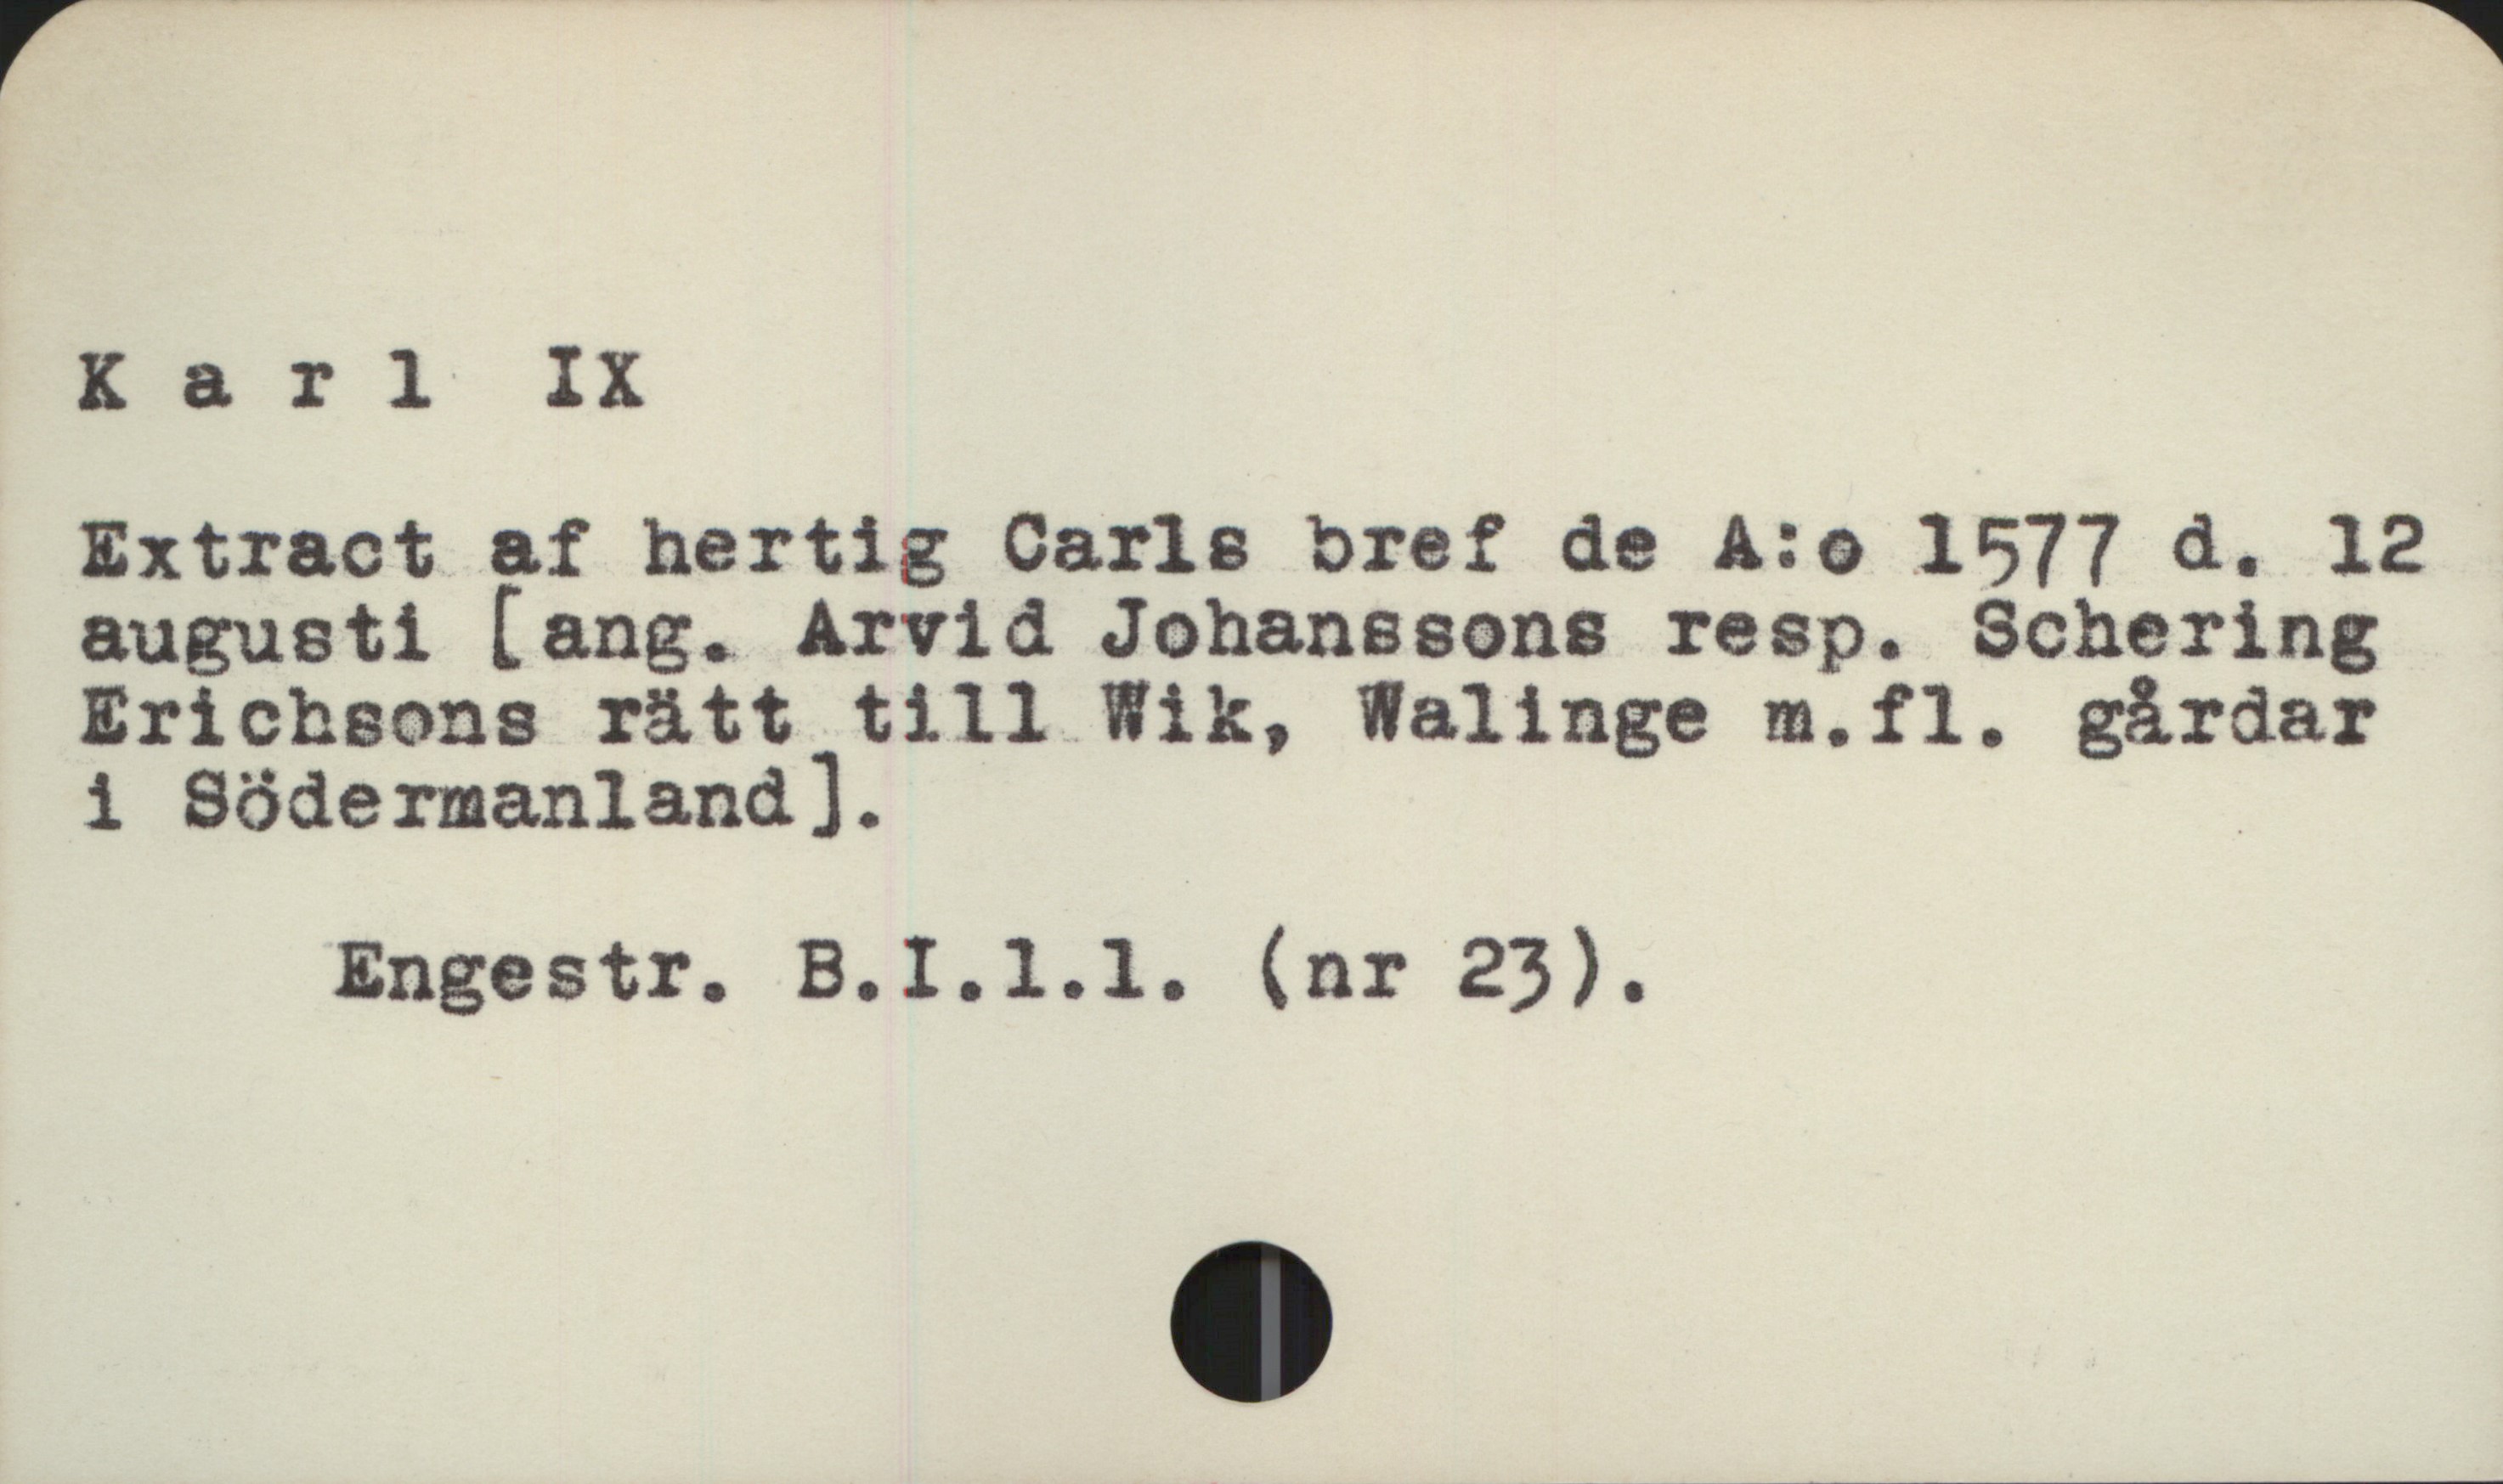  Karl IX

Extract af hertig Carls bref de A:o 1577 d. 12

augusti [ang. Arvid Johanssons resp. Schering

Erichsons rätt till Wik, Walinge m.fl. gårdar

i Södermanland]. _
Engestr. B.I.l.1l. (nr 23).

